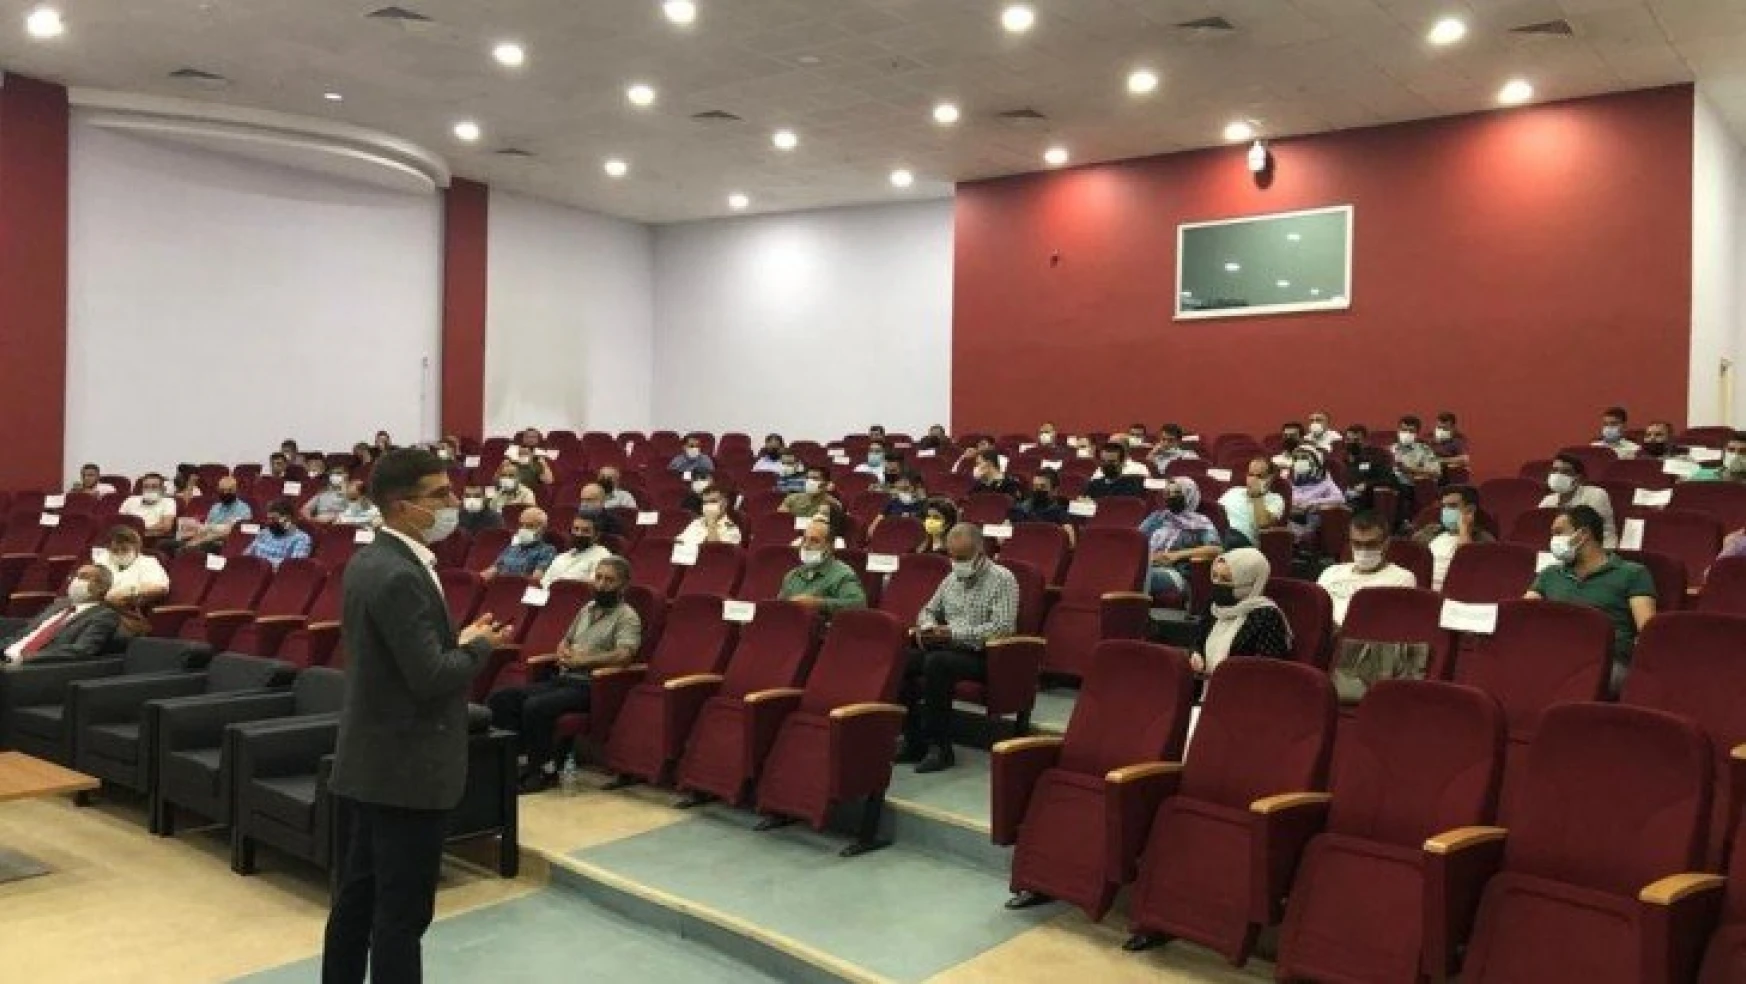 Malatya'da güvenlik görevlilerine seminer